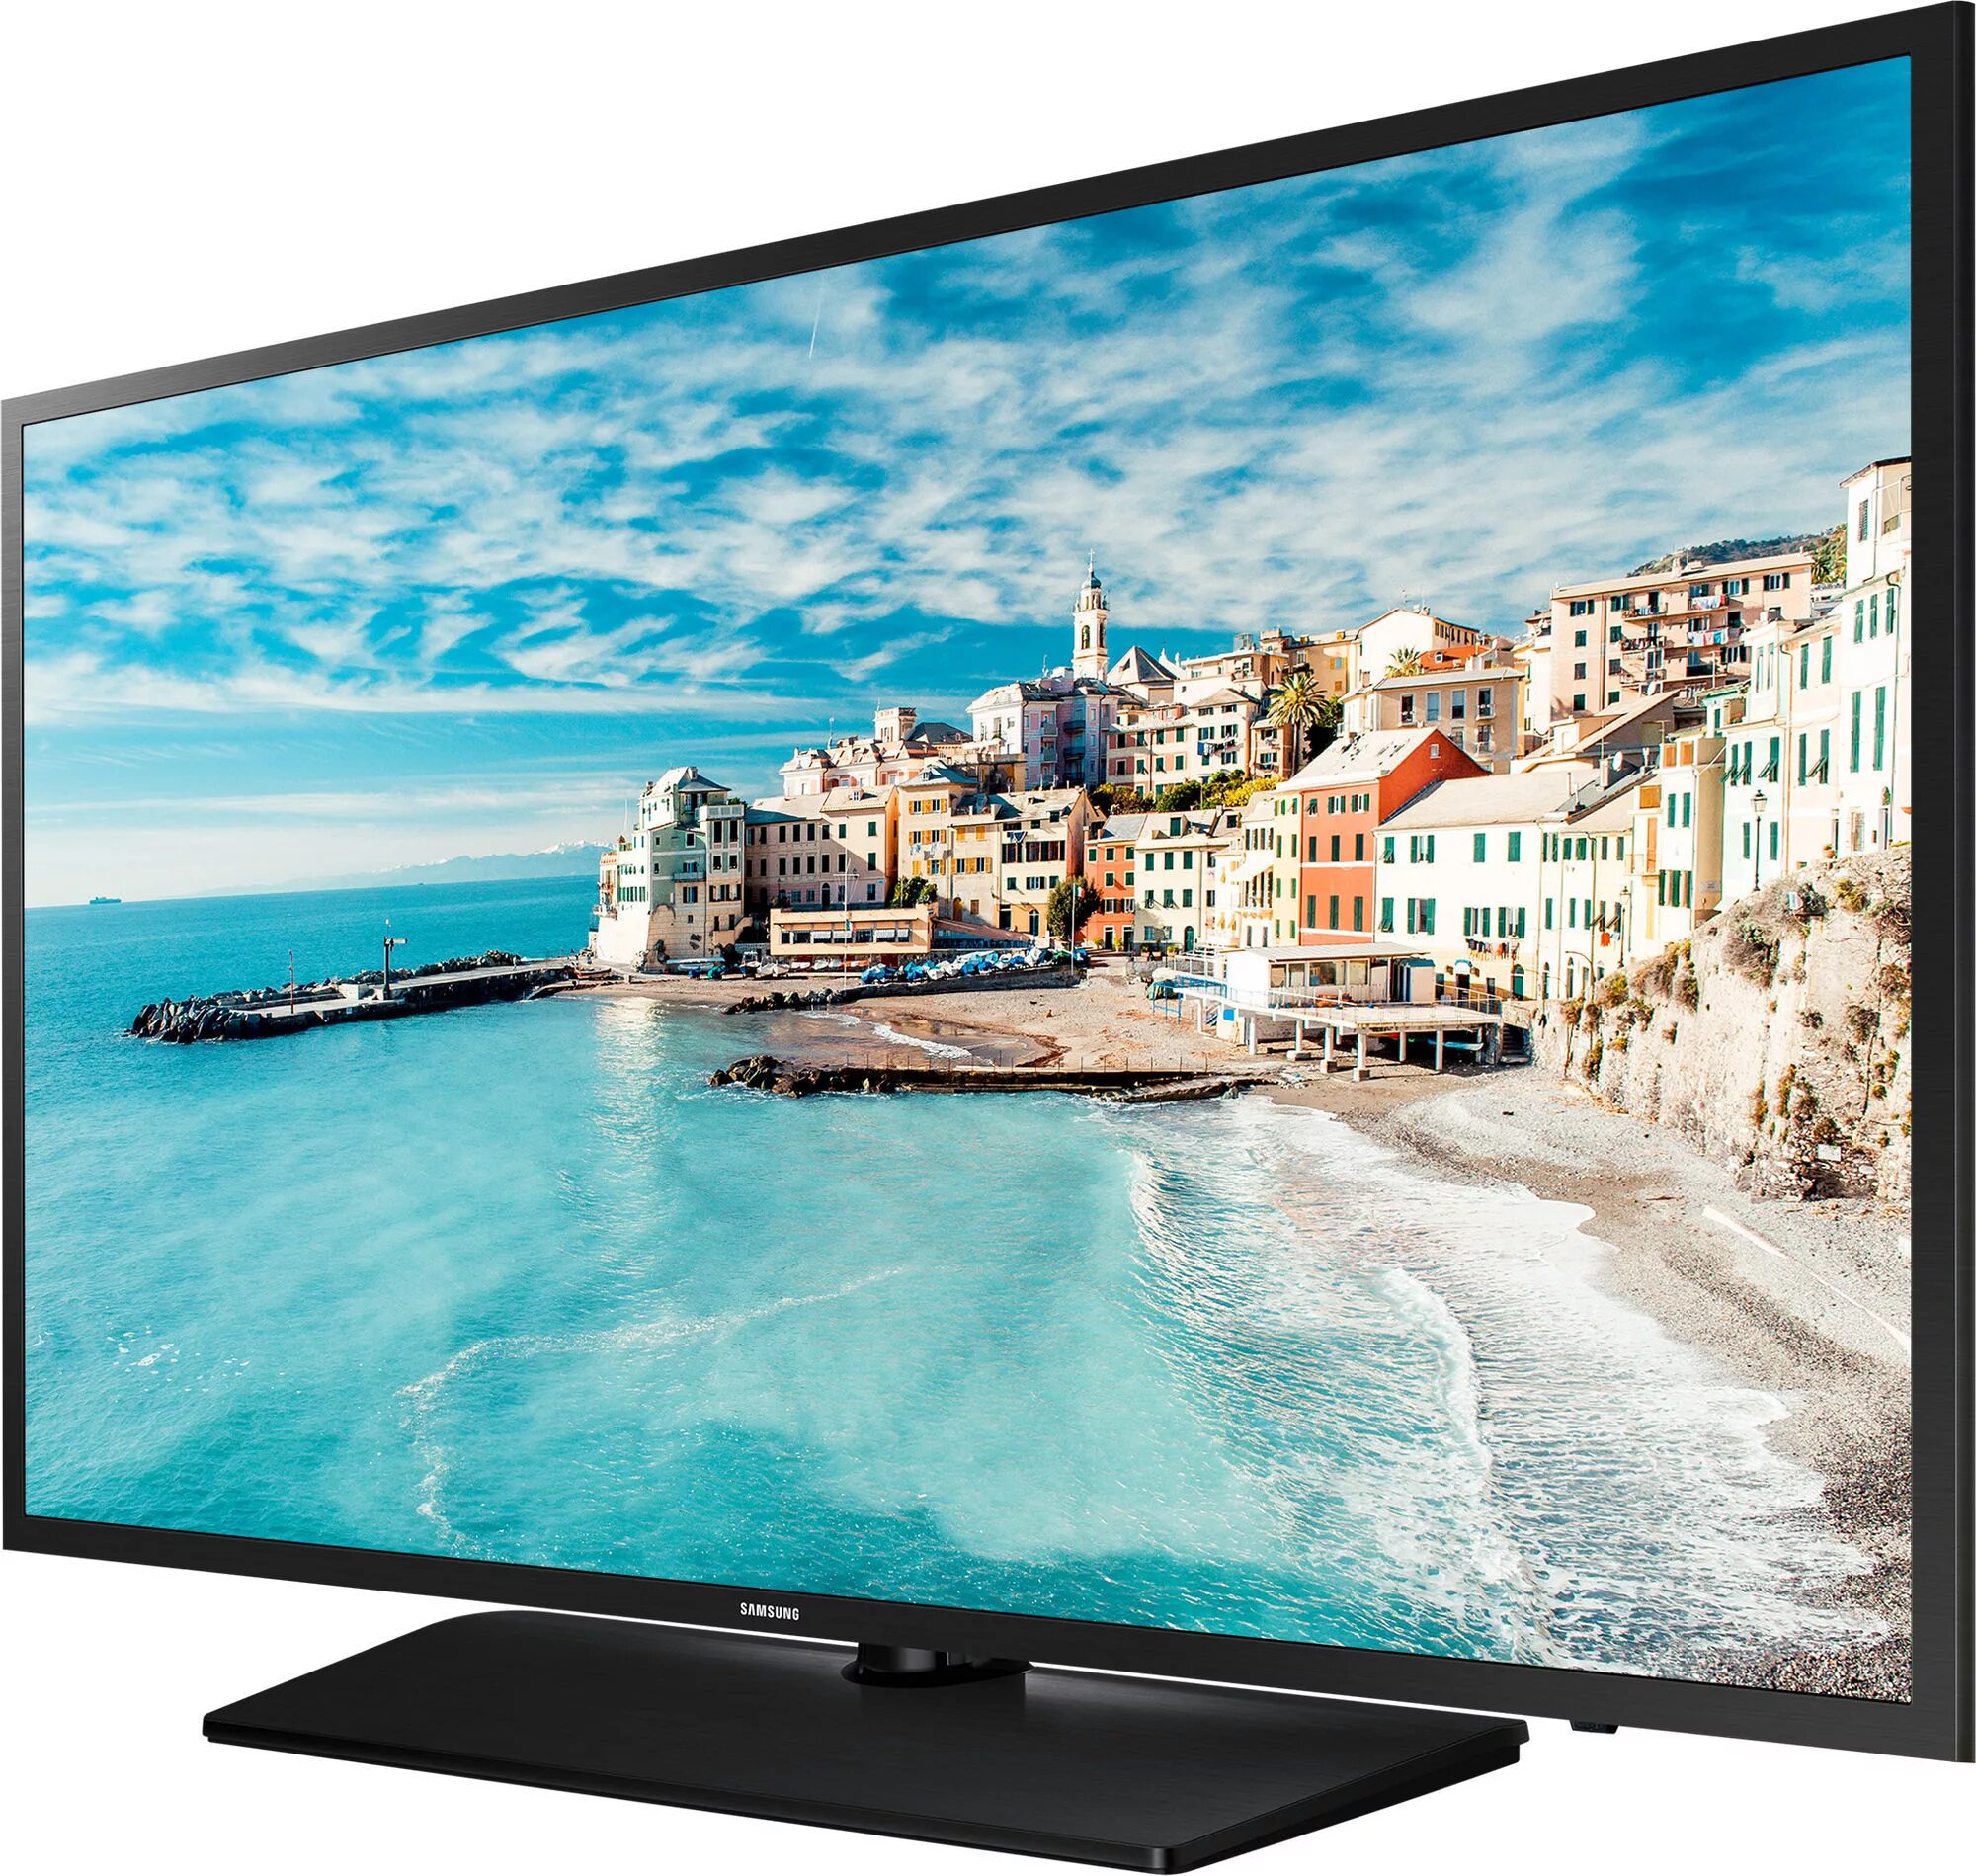 Хороший дешевый телевизор. Телевизор Samsung 32n4500. Телевизор самсунг 32n 5000. Телевизор Samsung 32n4000. Самсунг 32.d20yb.